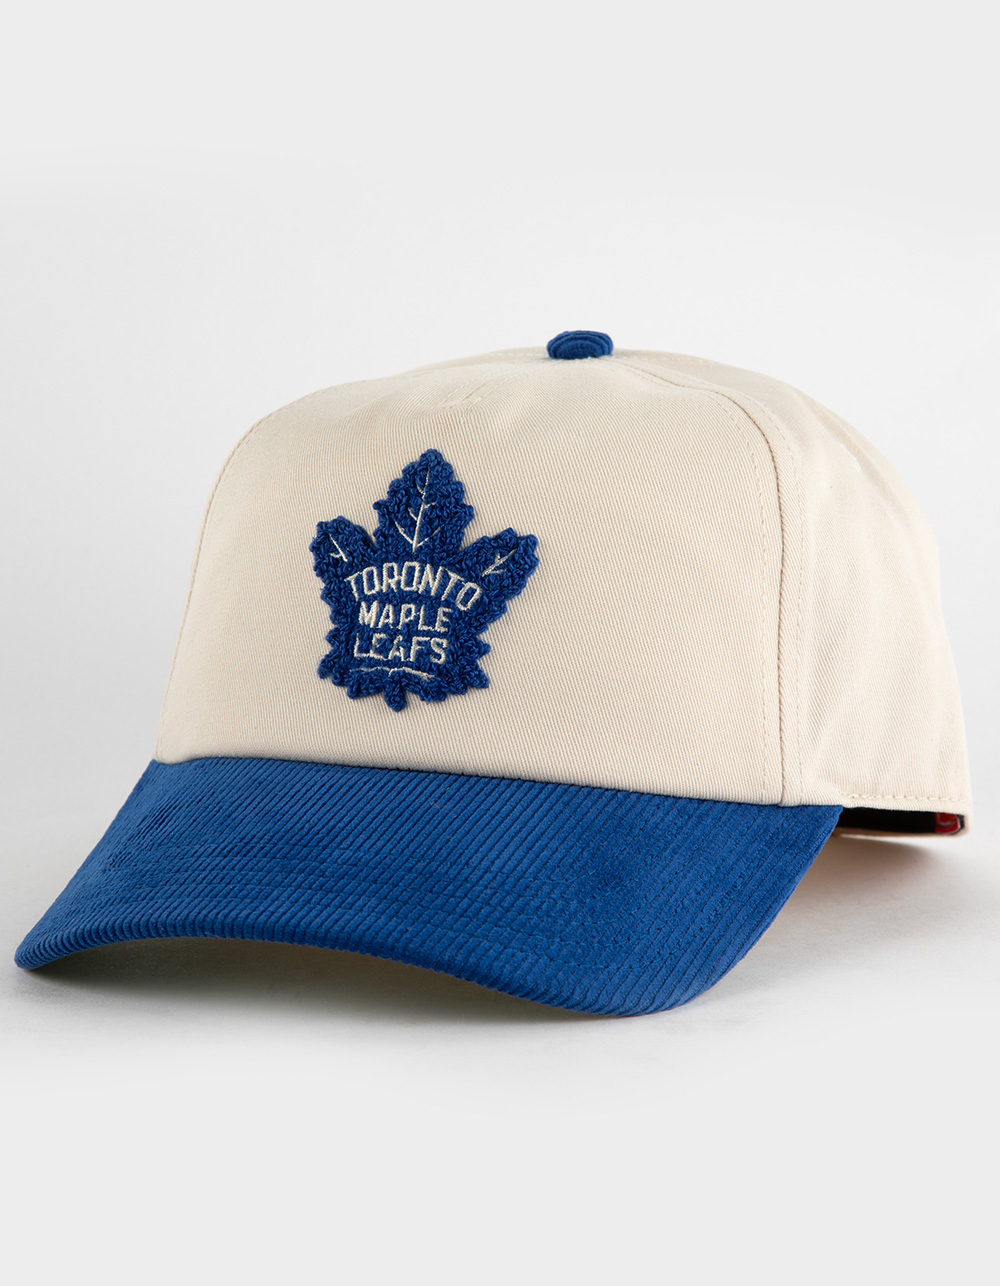 AMERICAN NEEDLE Toronto Maple Leafs Burnett NHL Snapback Hat